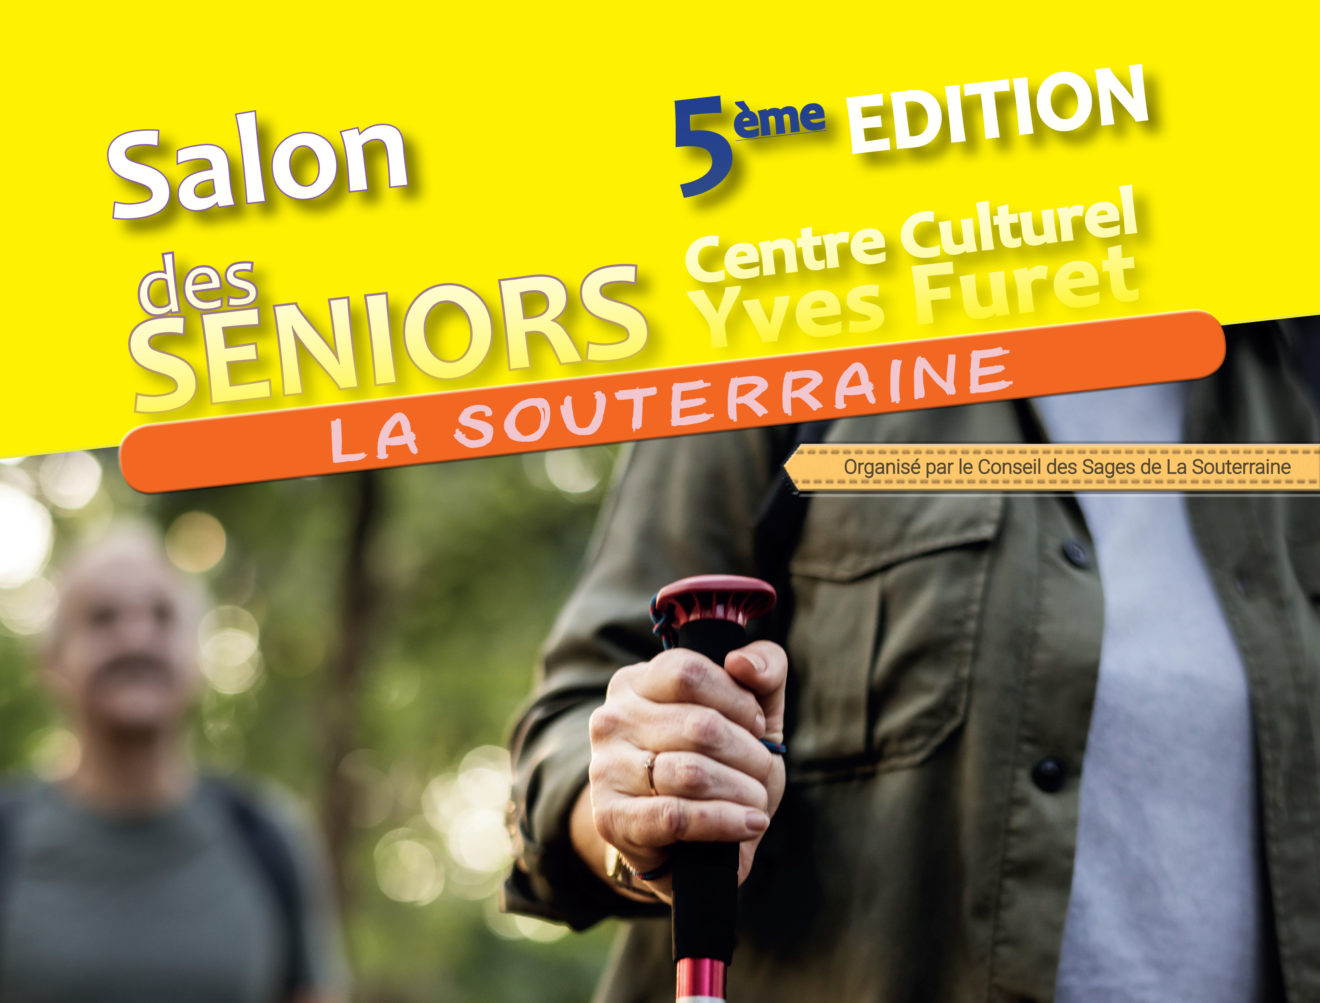 20191009 - Salon des séniors